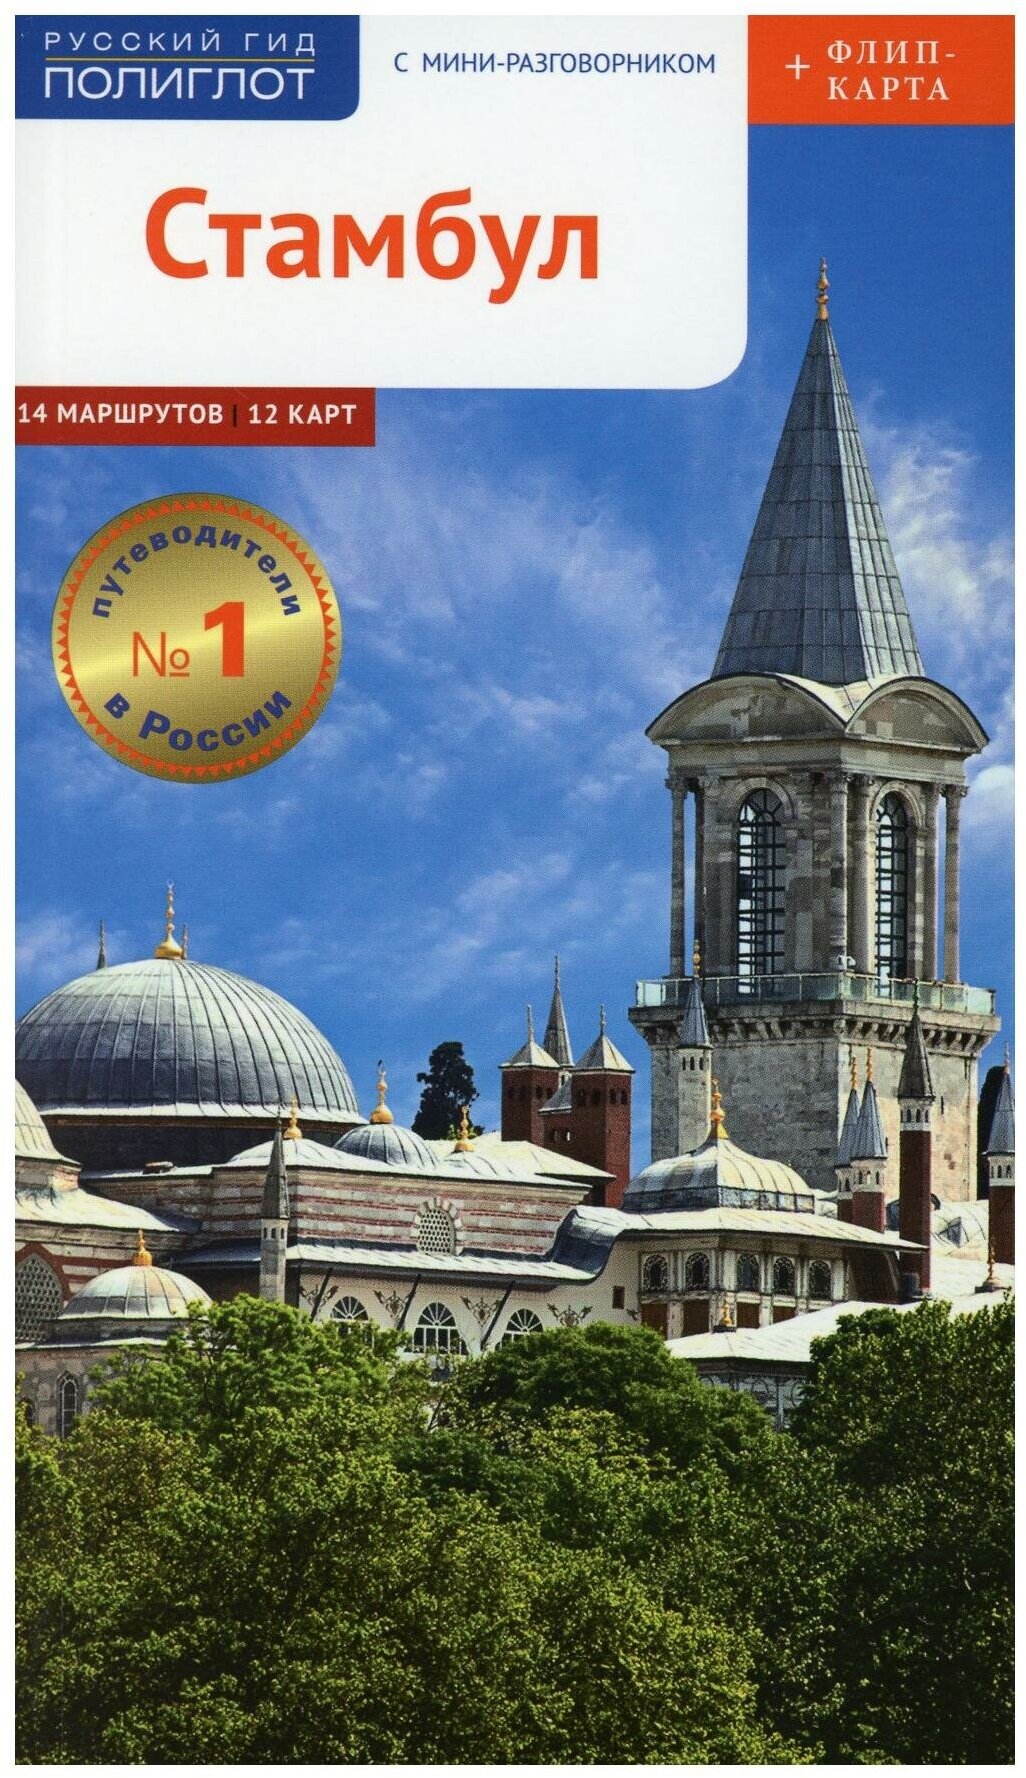 Стамбул: путеводитель с мини-разговорником ( карта). Вайсер В. Аякс-Пресс